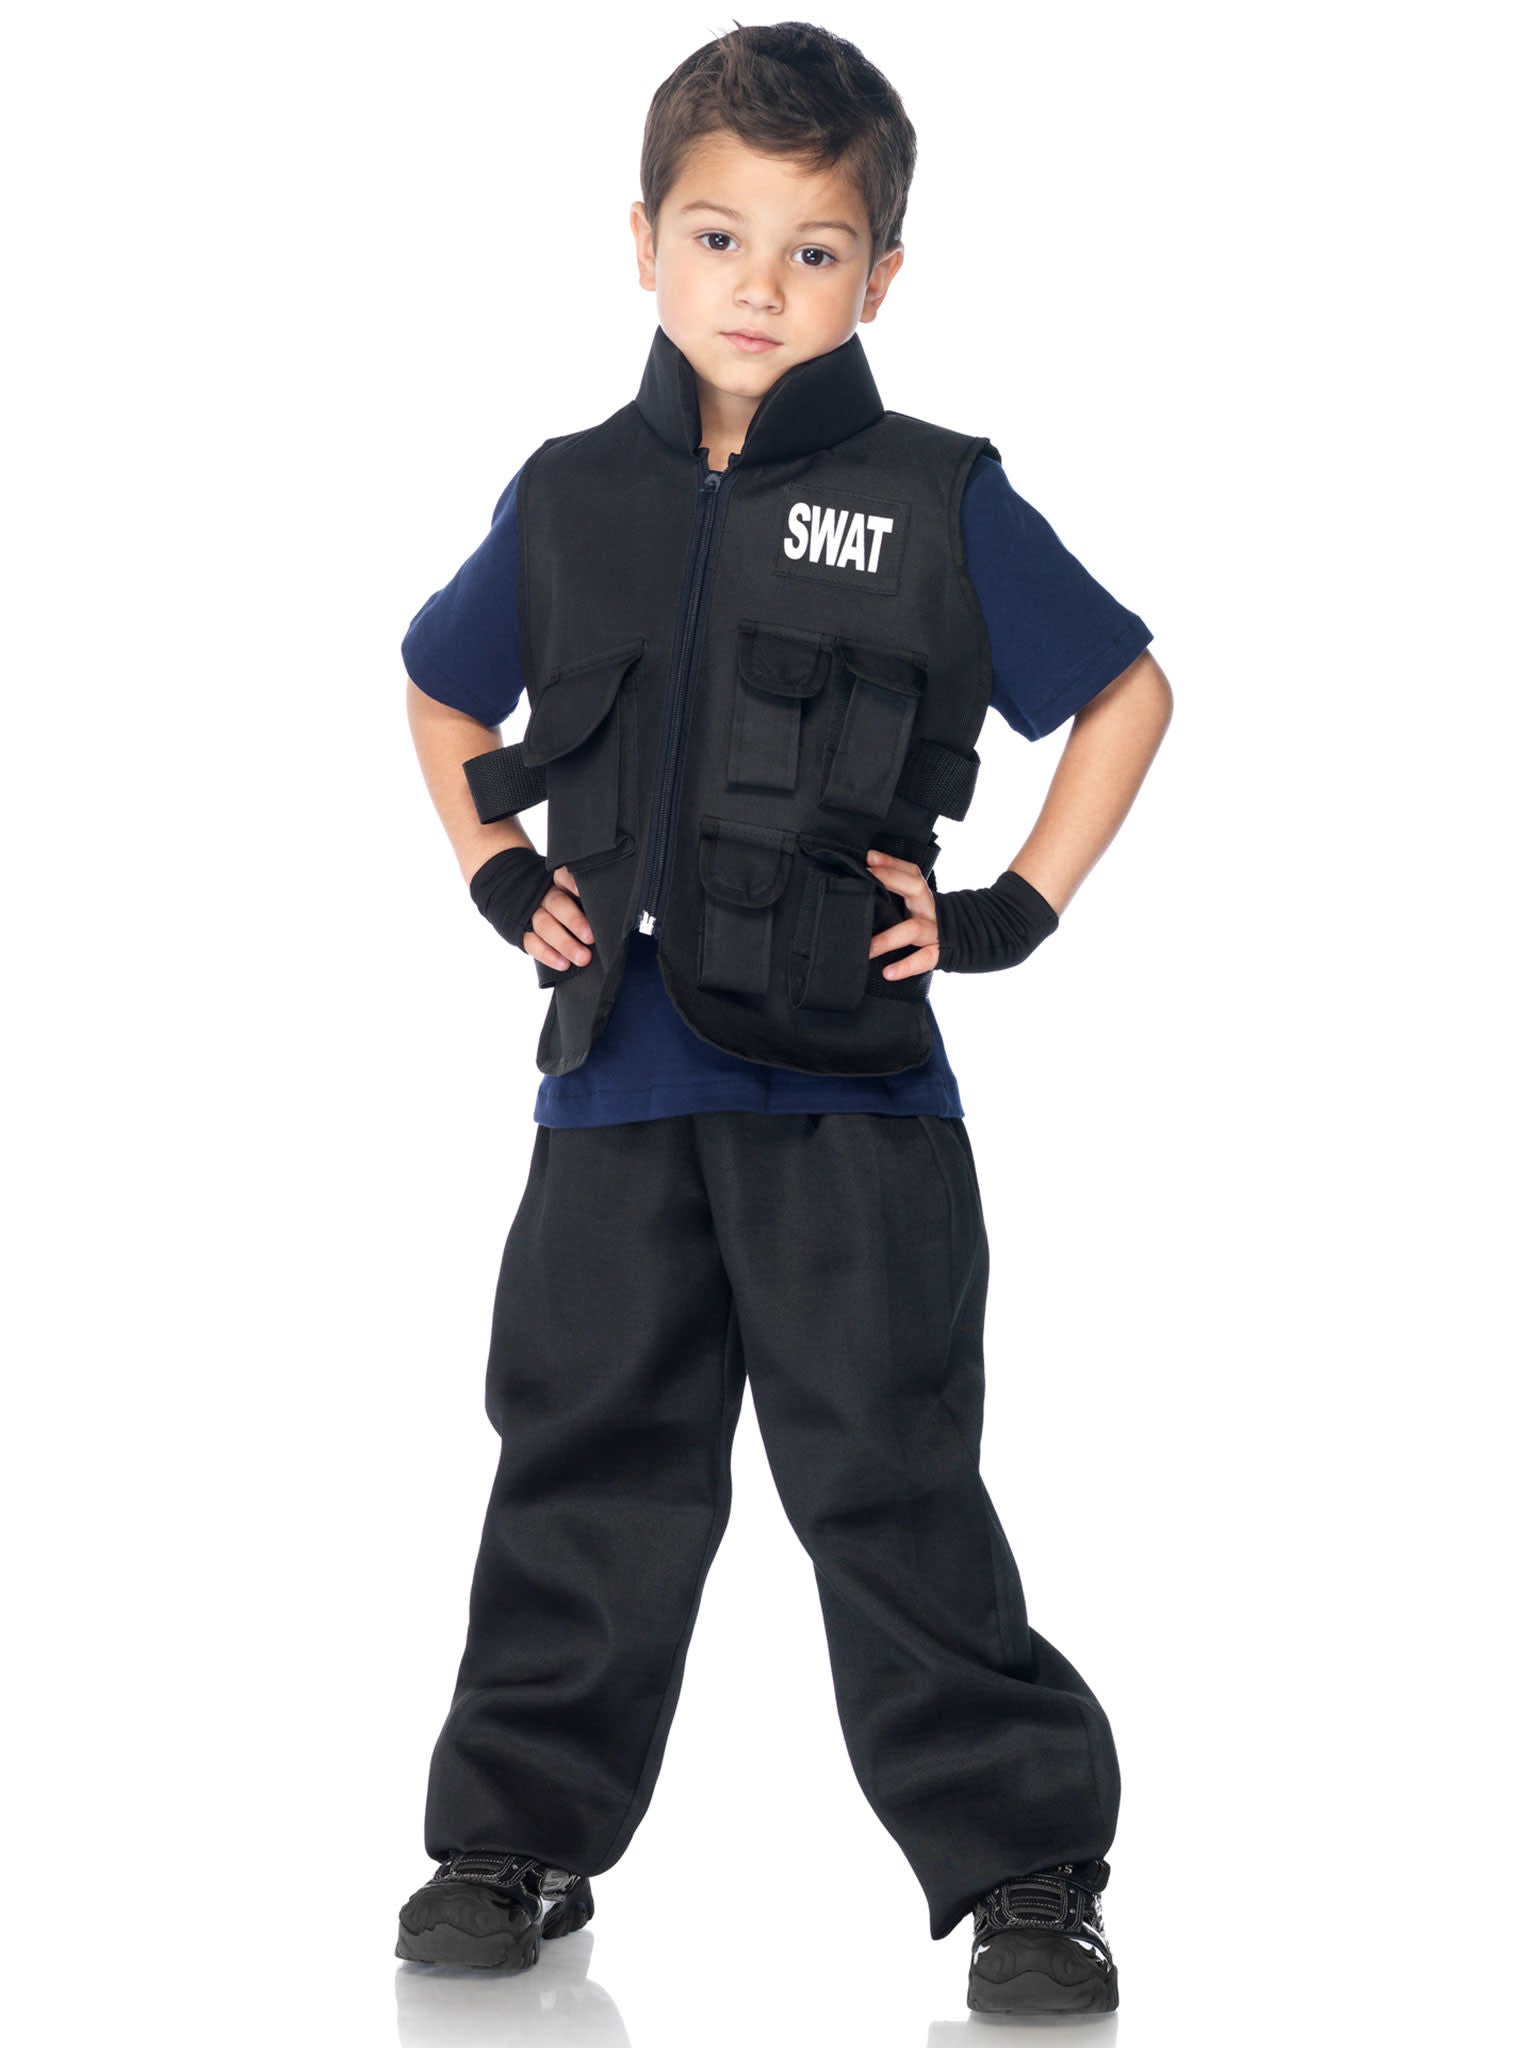 Costume Enfant - Officier SwatParty Shop